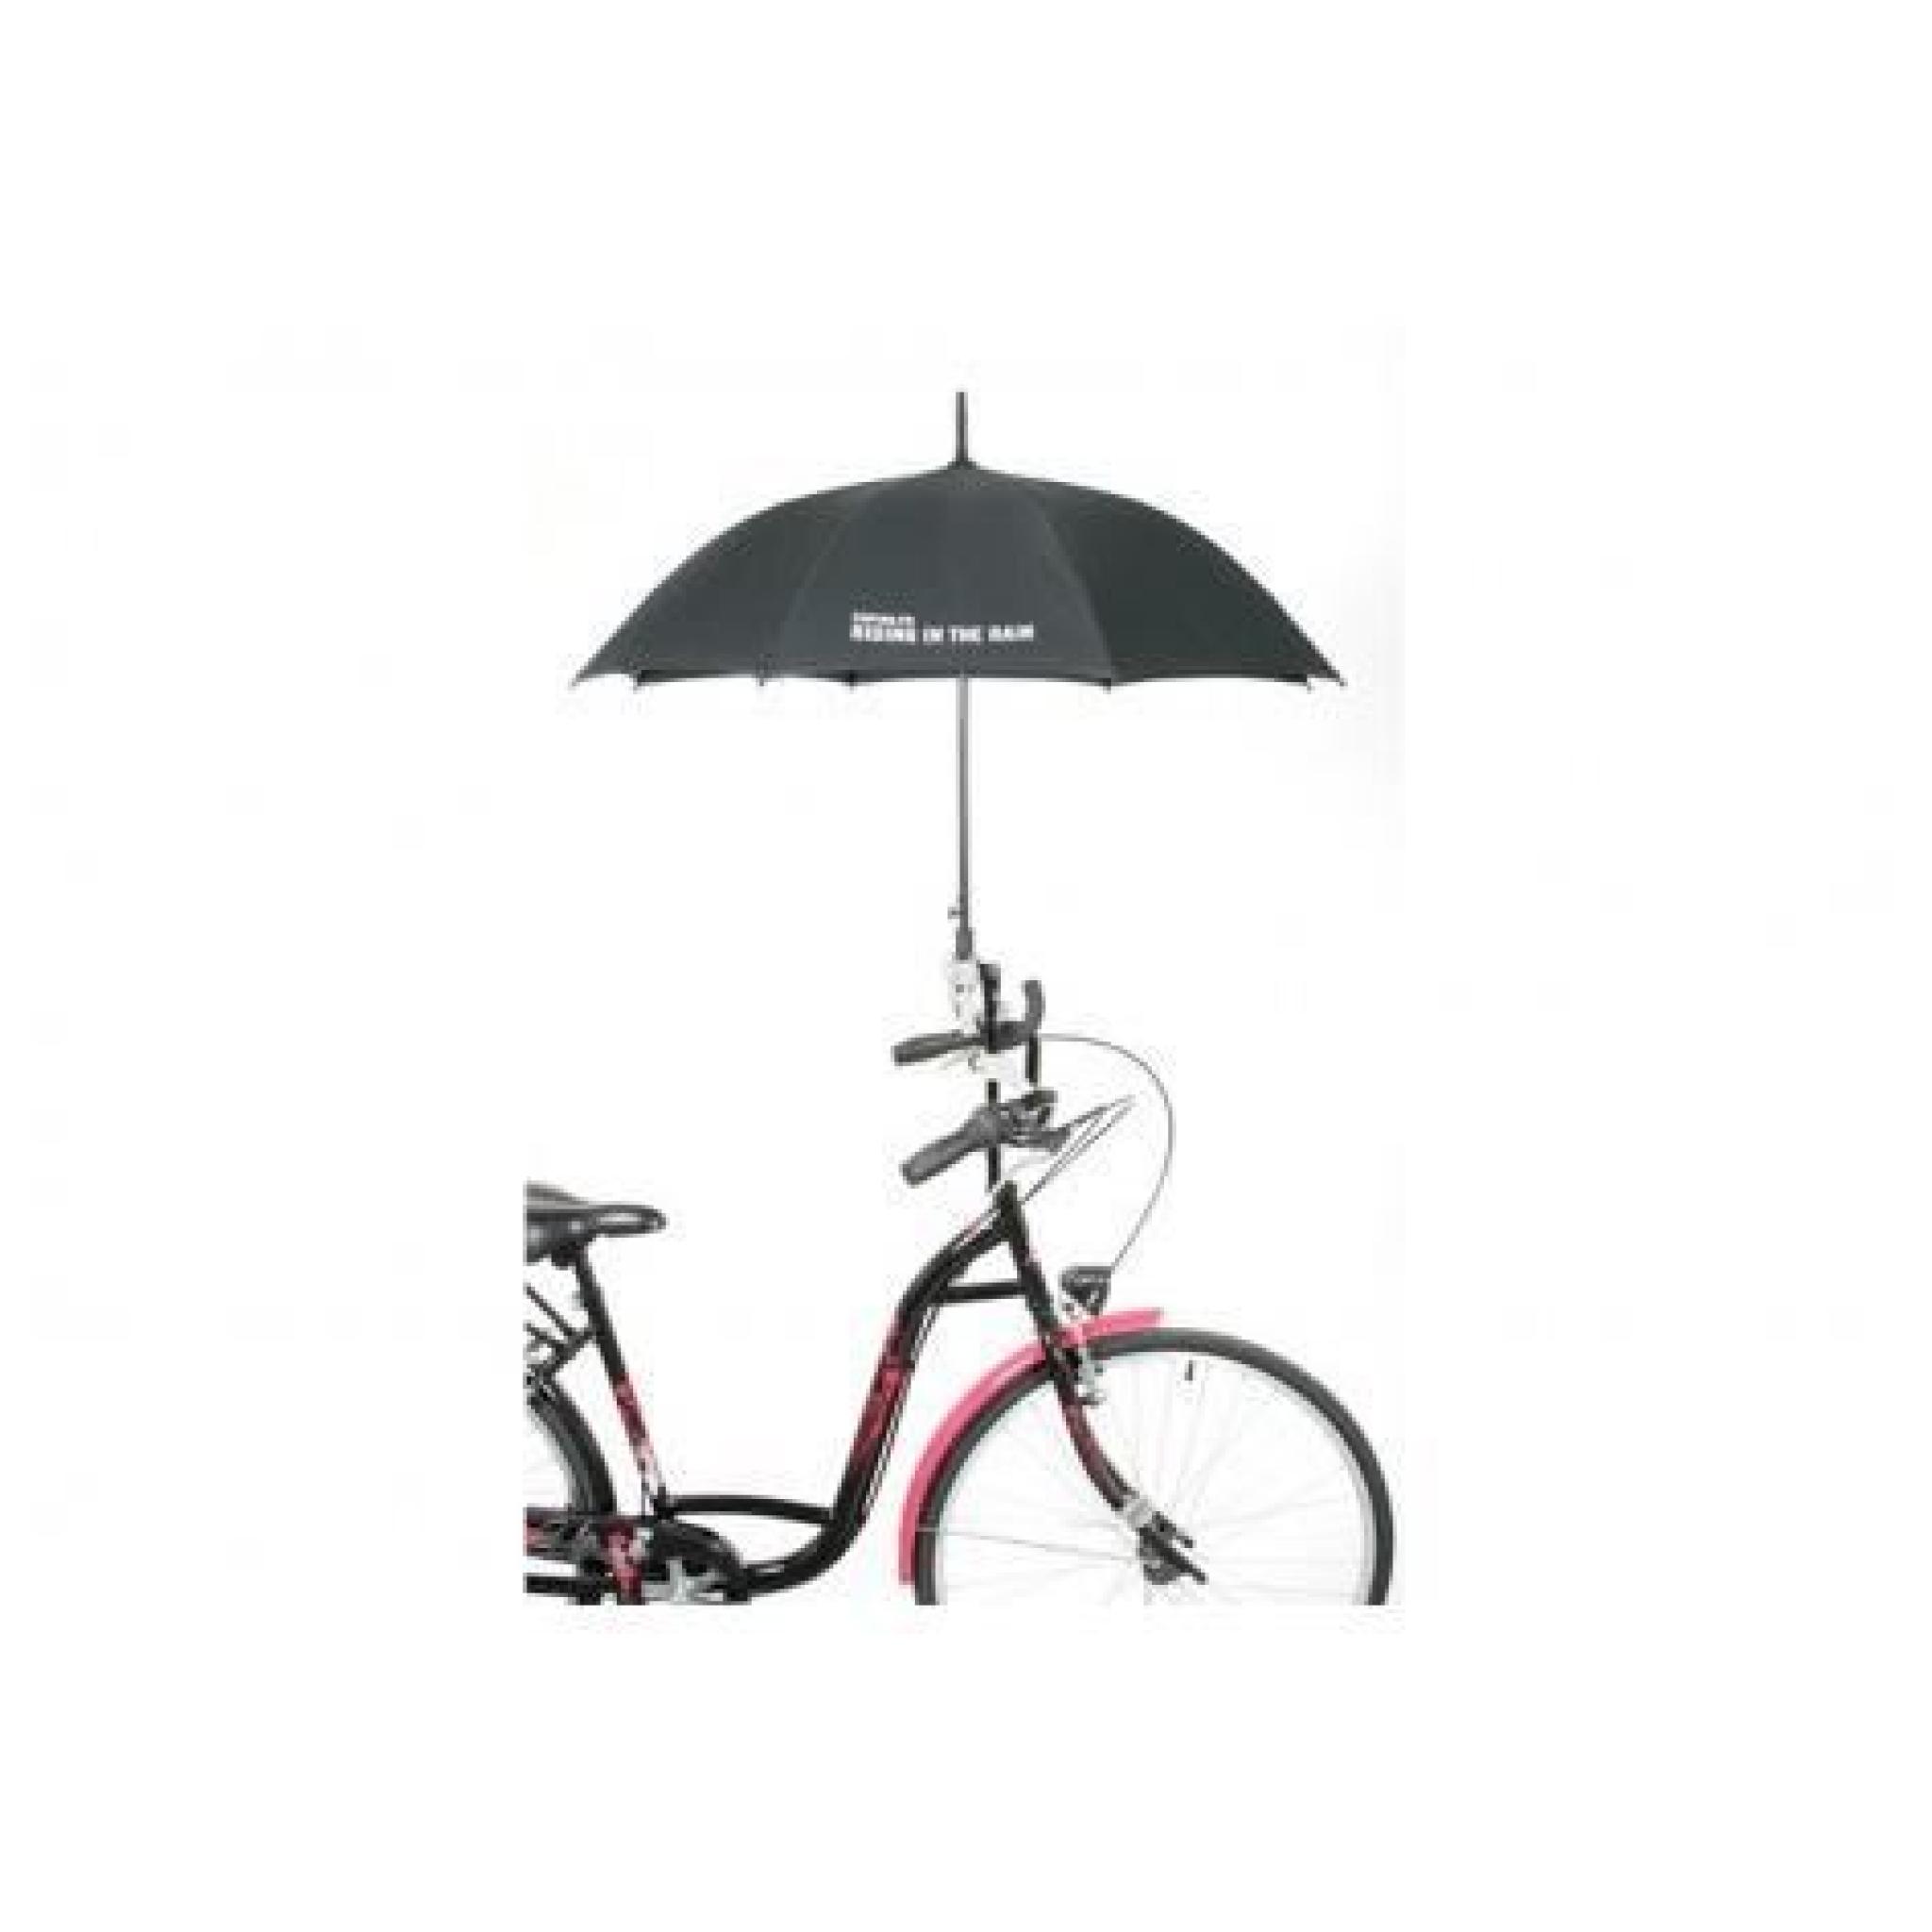 Porte parapluie cycle